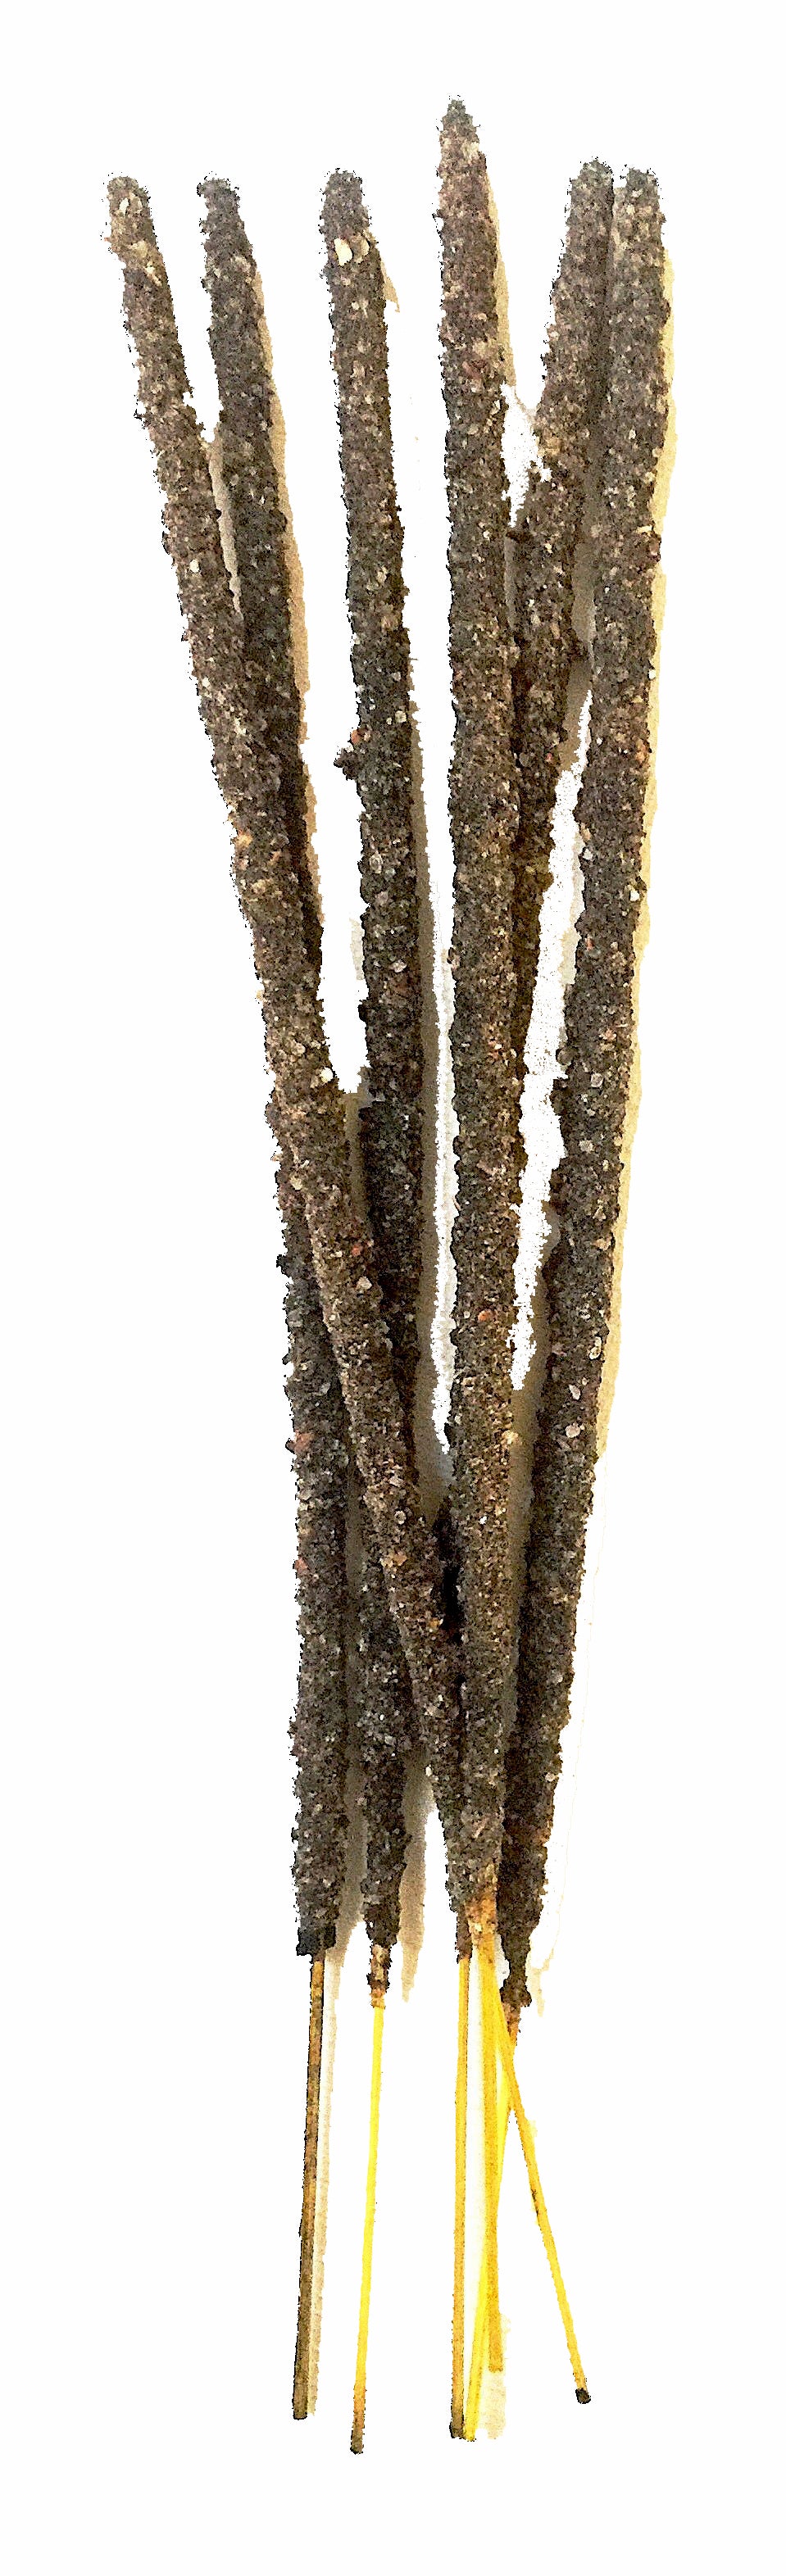 PK/6 - Artisan Incense Sticks - Maya Copal & Sandalwood - Sacred Smoke